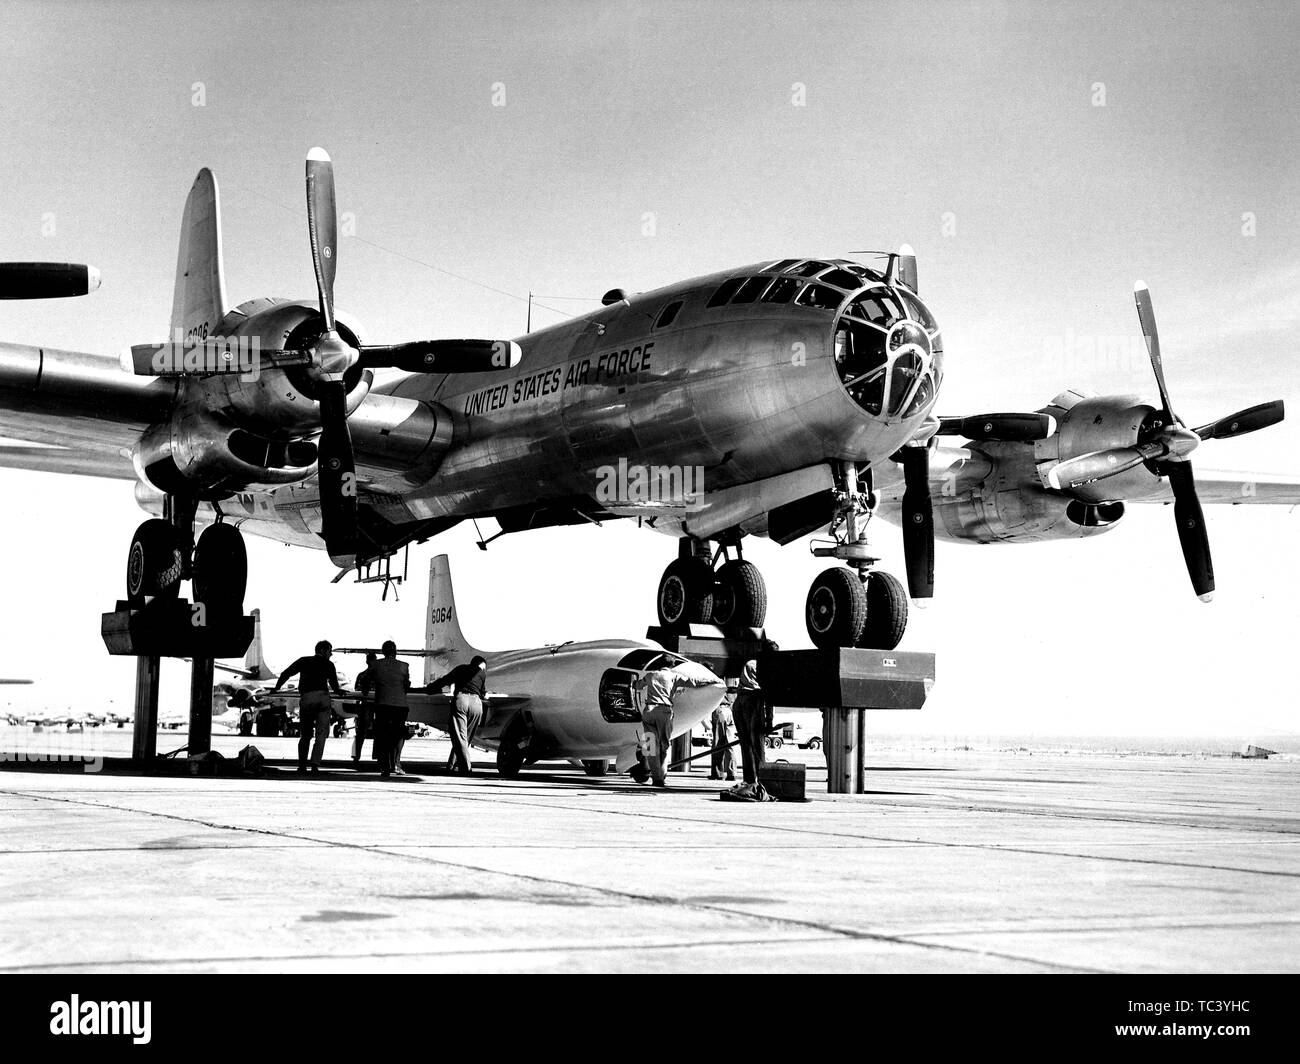 X-1 'Queenie' aeromobile accoppiato all'EB-50A Superfortress aeromobili a Edwards Air Force Base, Kern County, California, 9 novembre 1951. Immagine cortesia Nazionale Aeronautica e Spaziale Administration (NASA). () Foto Stock